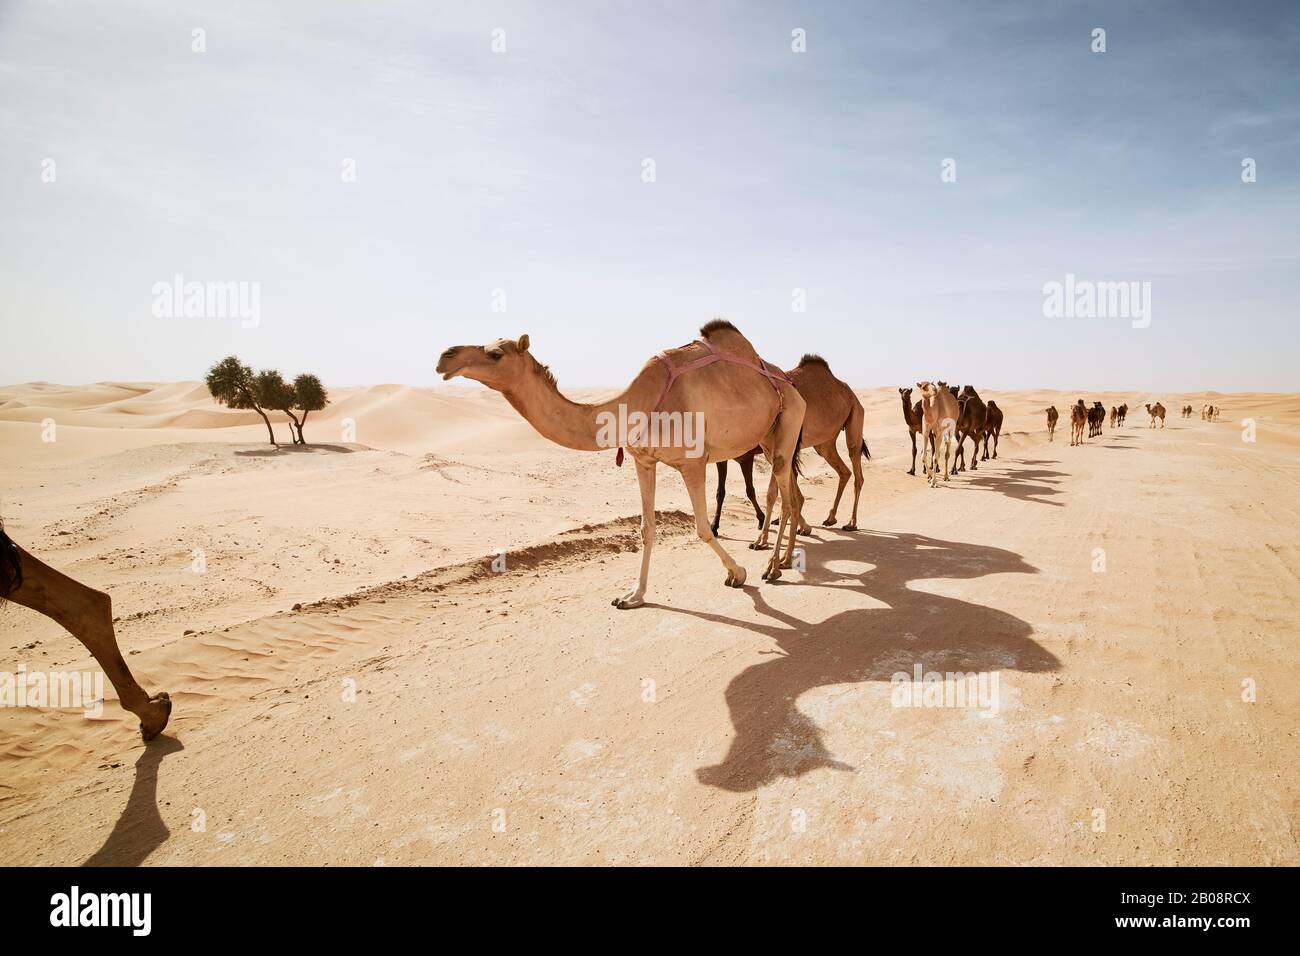 Manada de camellos caminando por carretera de arena contra dunas de arena en el paisaje del desierto. Abu Dhabi, Emiratos Árabes Unidos Foto de stock